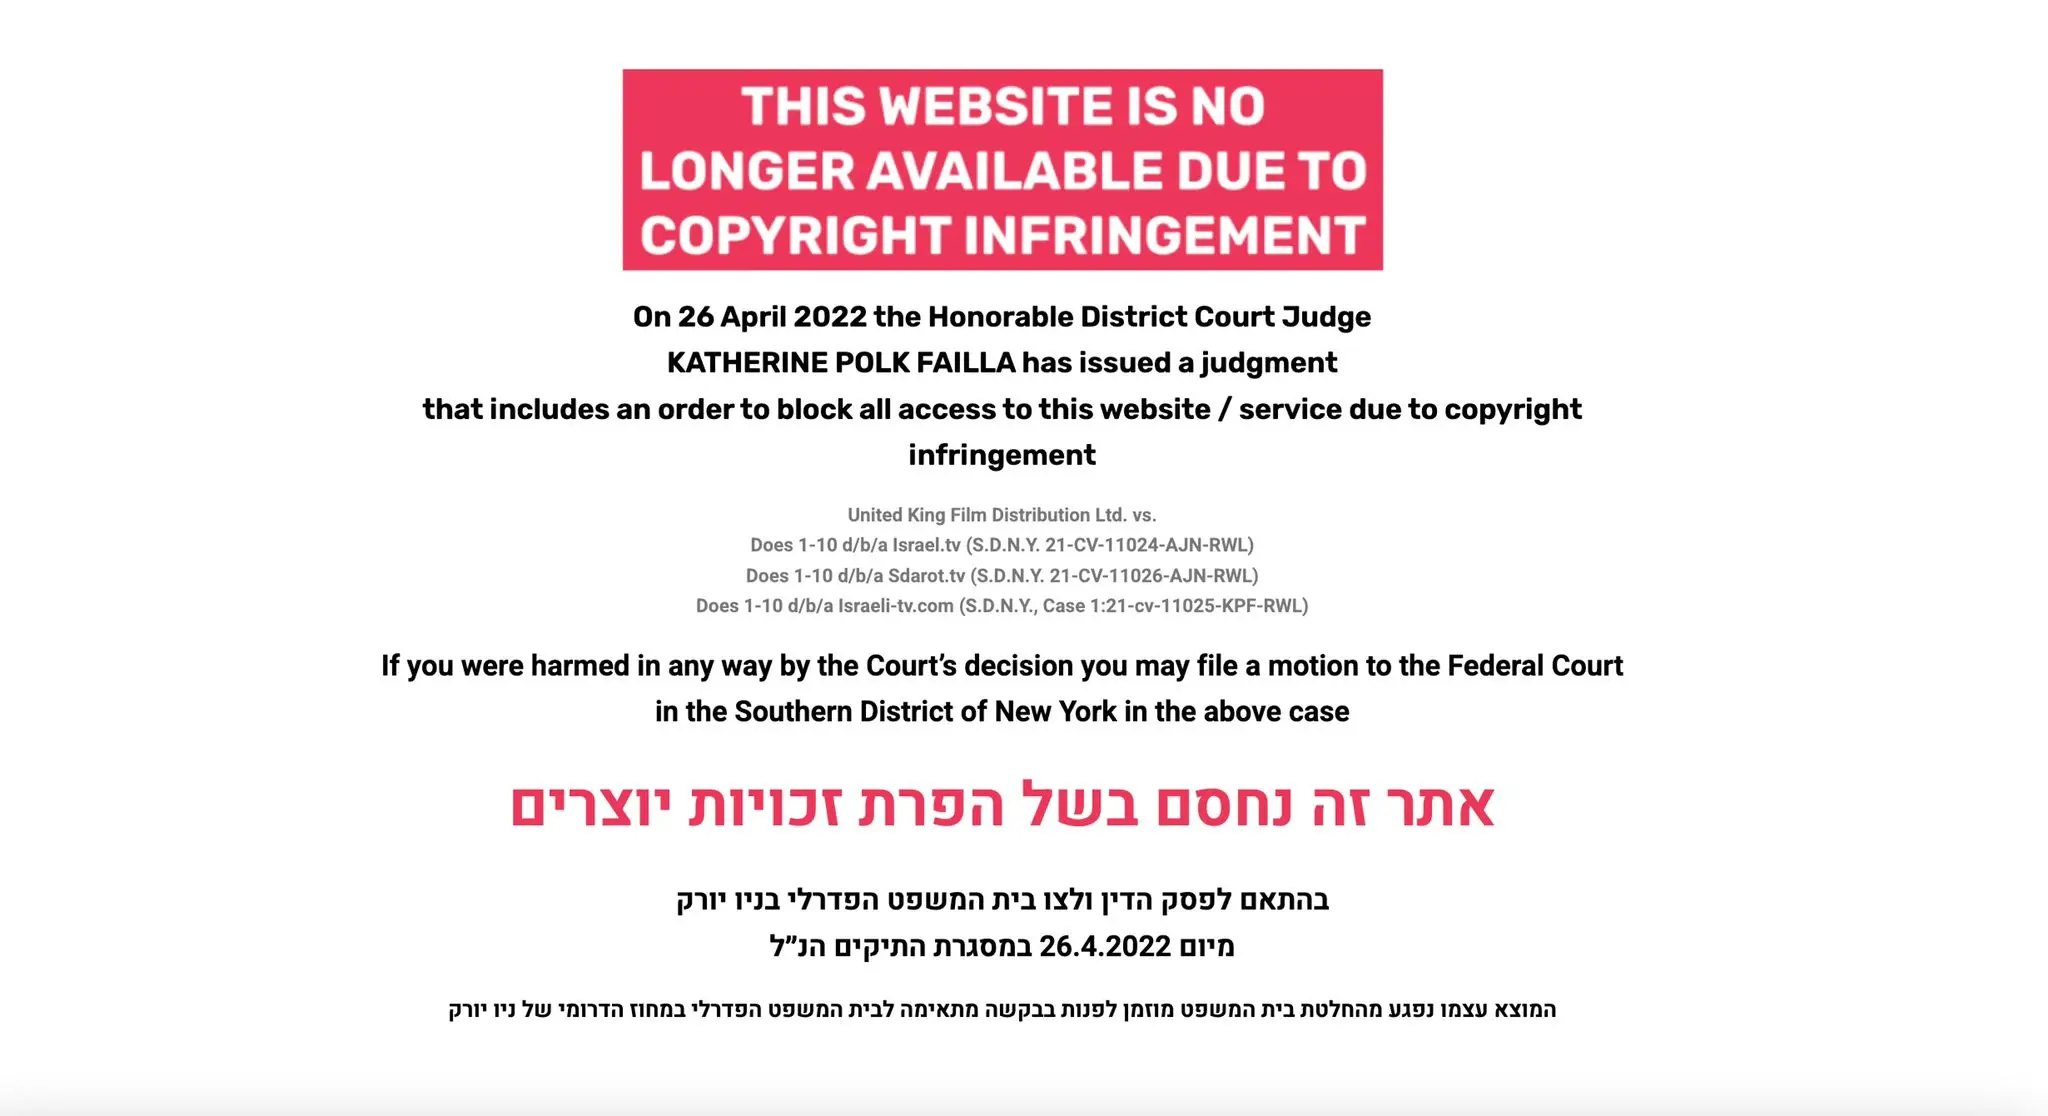 "אתר זה נחסם בשל הפרת זכויות יוצרים". ההודעה שמופיעה לגולשים